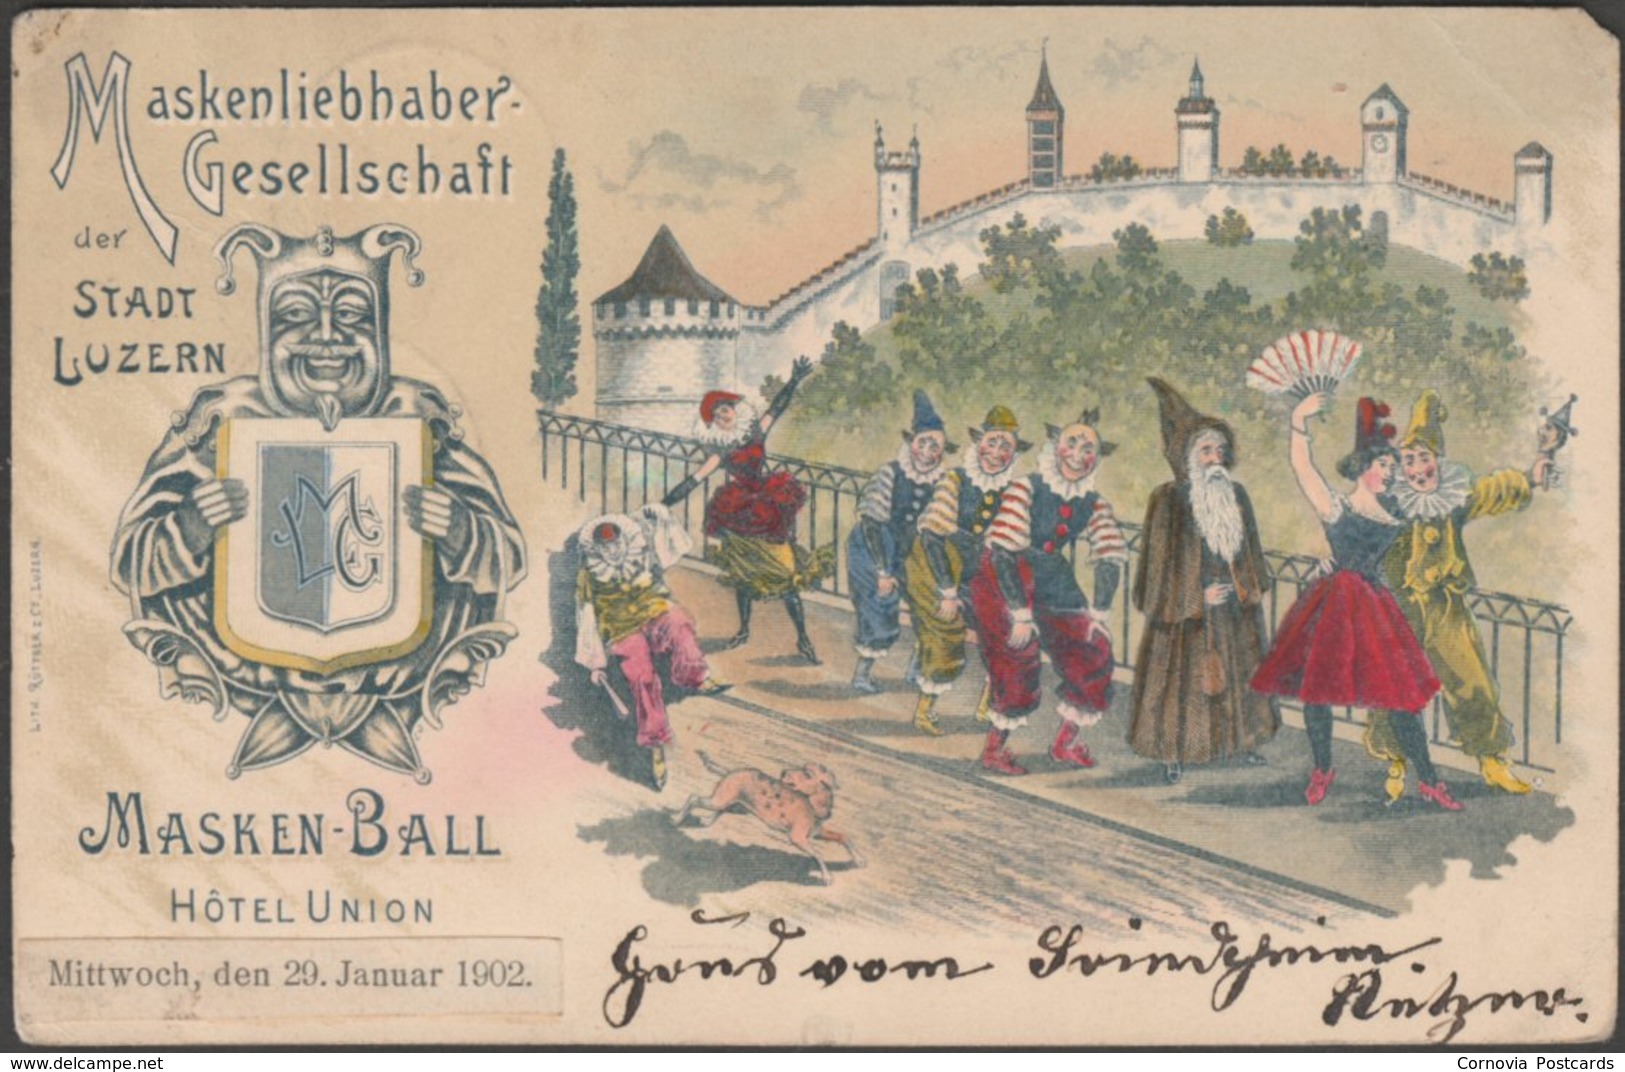 Masken-Ball, Hôtel Union, Luzern, 1902 - Rüttger & Co AK - Luzern